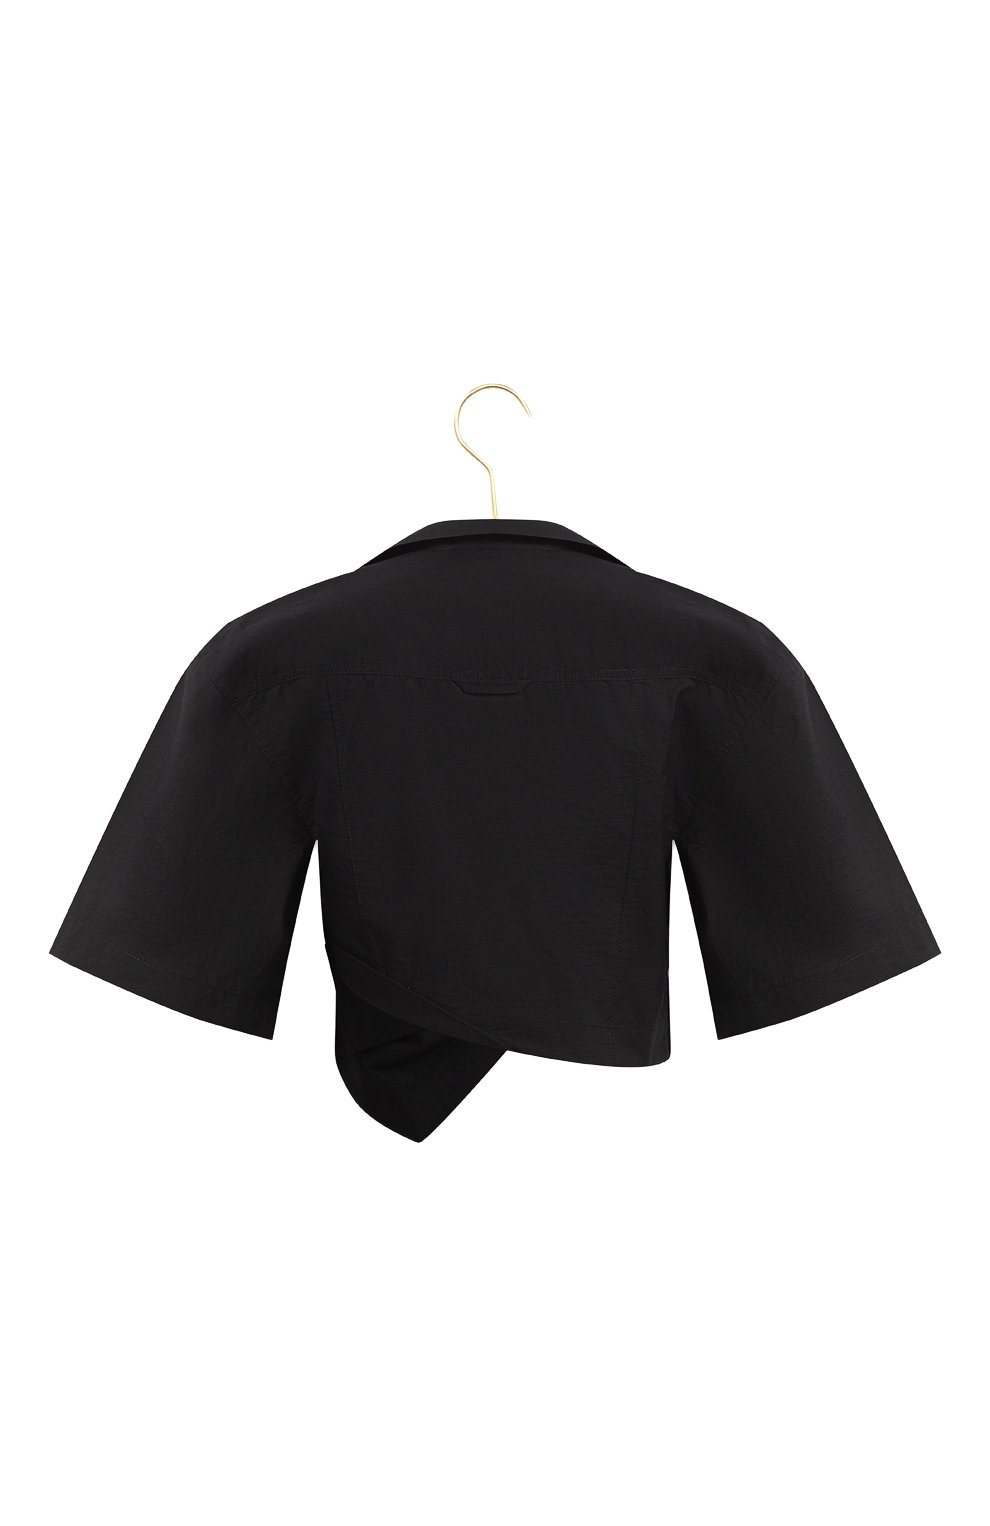 Хлопковая блузка | Jacquemus | Чёрный - 2